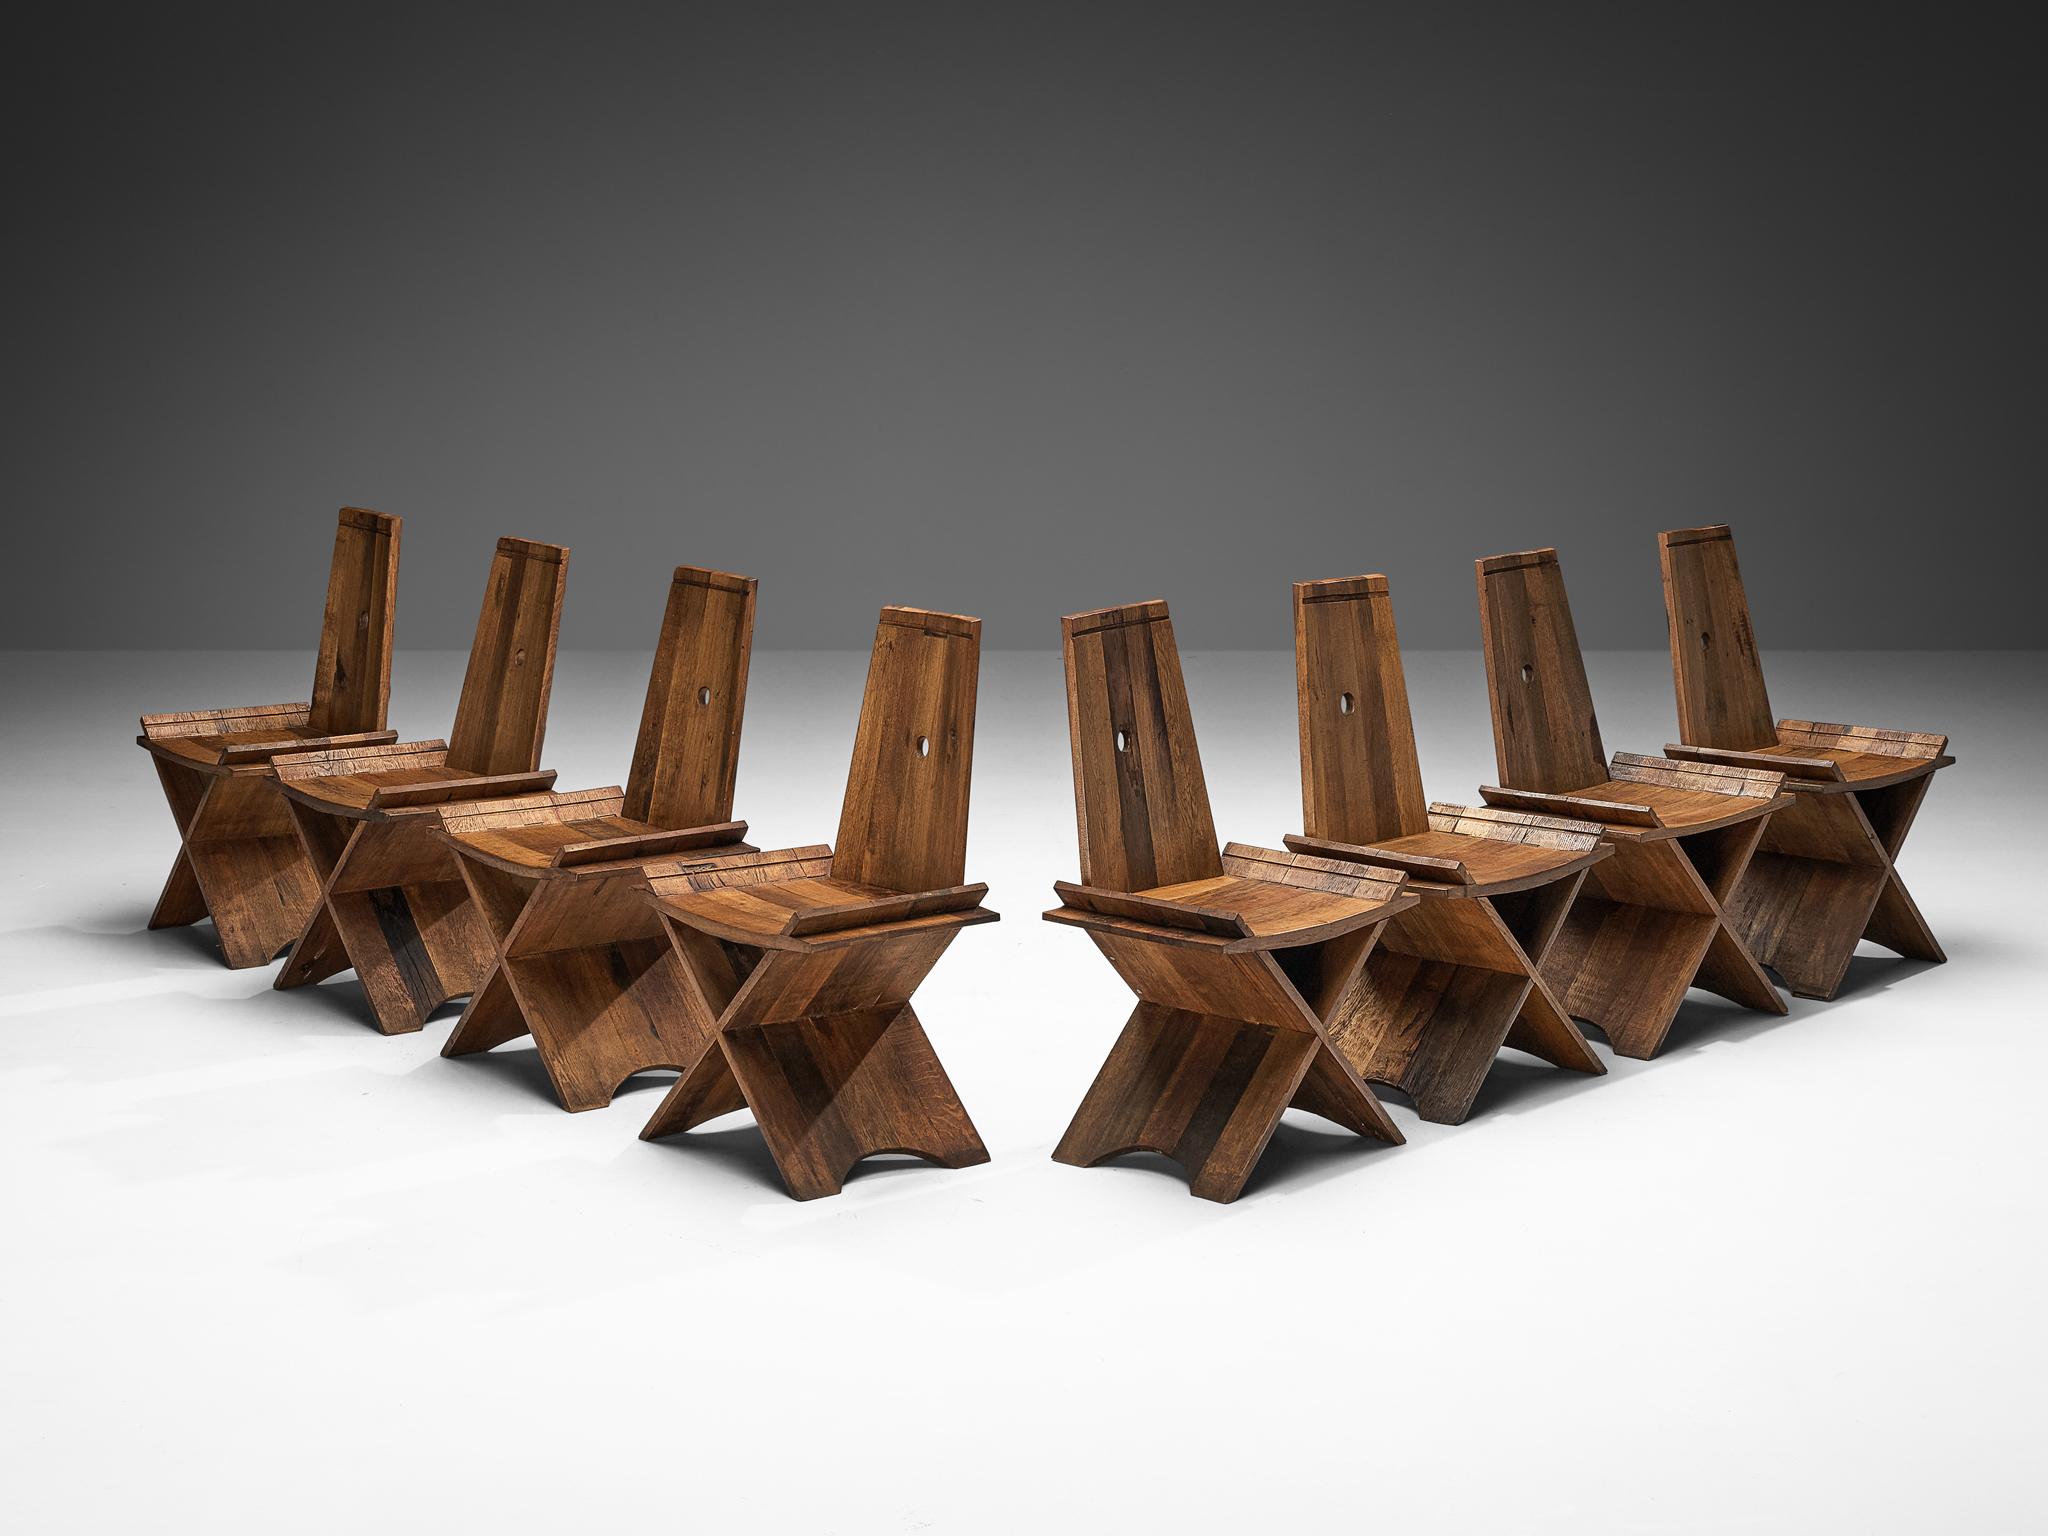 Satz von acht Esszimmerstühlen, Eiche, Eisen, Europa, 1970er Jahre

Diese Stühle sind ein Beispiel für eine harmonische Synthese, bei der die Robustheit des brutalistischen Stils nahtlos mit der schlichten Einfachheit des rustikalen Designs